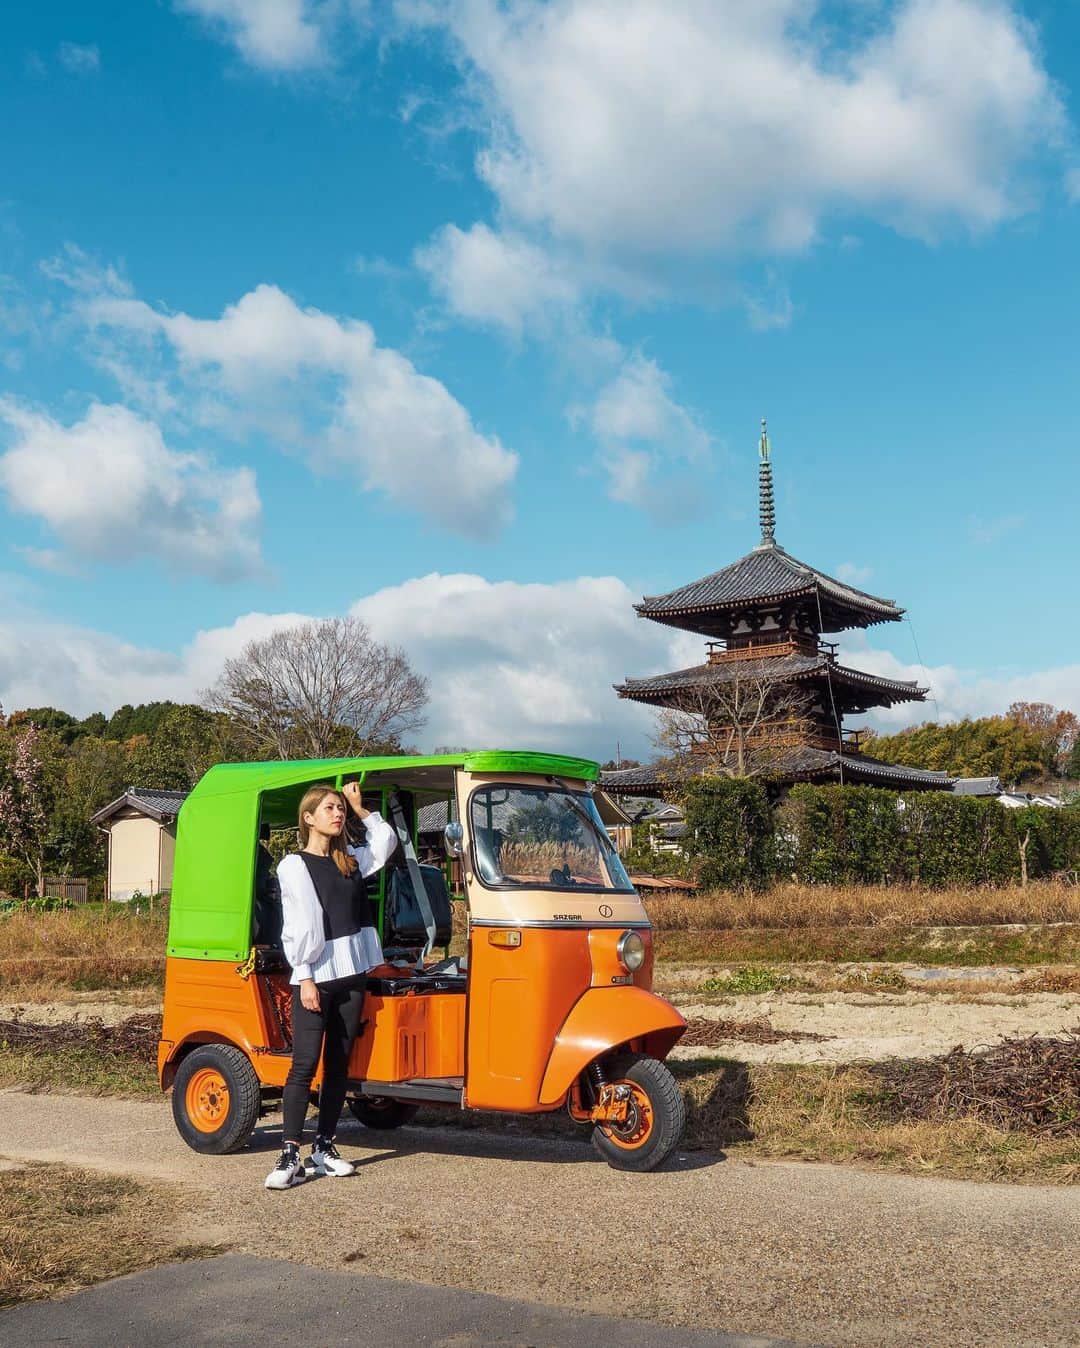 Koichiのインスタグラム：「.  Riding a Tuk-Tuk @ Nara’s local area 🛺💨  ワーケーションの楽しみ方のひとつに、滞在地周辺の町を散策してみることがあります。 信貴山を下りて斑鳩町（いかるがちょう）へ。この辺りには、長閑な里山の風景と世界遺産の法隆寺などがあって、散策にはもってこいの場所。 この日はドライバー付きのトゥクトゥクをチャーターして、ワーケーション仲間のアラマリちゃん @marina_k_araki と2時間のドライブデート 笑  1st / 世界遺産に登録されている法起寺。長閑な風景の中に国宝の三重塔がポツンとあって、とてもフォトジェニックな場所。  2nd / 和カフェ布穀薗（ふこくえん）。歴史的建造物を利用したカフェで、斑鳩名物の竜田揚げランチが美味しいですよ。  3rd / 法隆寺の近くで斑鳩神社に寄り道。トゥクトゥクはちっちゃいから、ちょっと寄り道がしやすいのがいいな。  4th / 法起寺周辺の畑の中をドライブ。この辺りは秋には一面のコスモス畑になります。  #信貴山ワーケーション #奈良 #信貴山 #斑鳩 #SAGOJO  Special thanks @waikaru.ikaruga @fukokuenikaruga .」